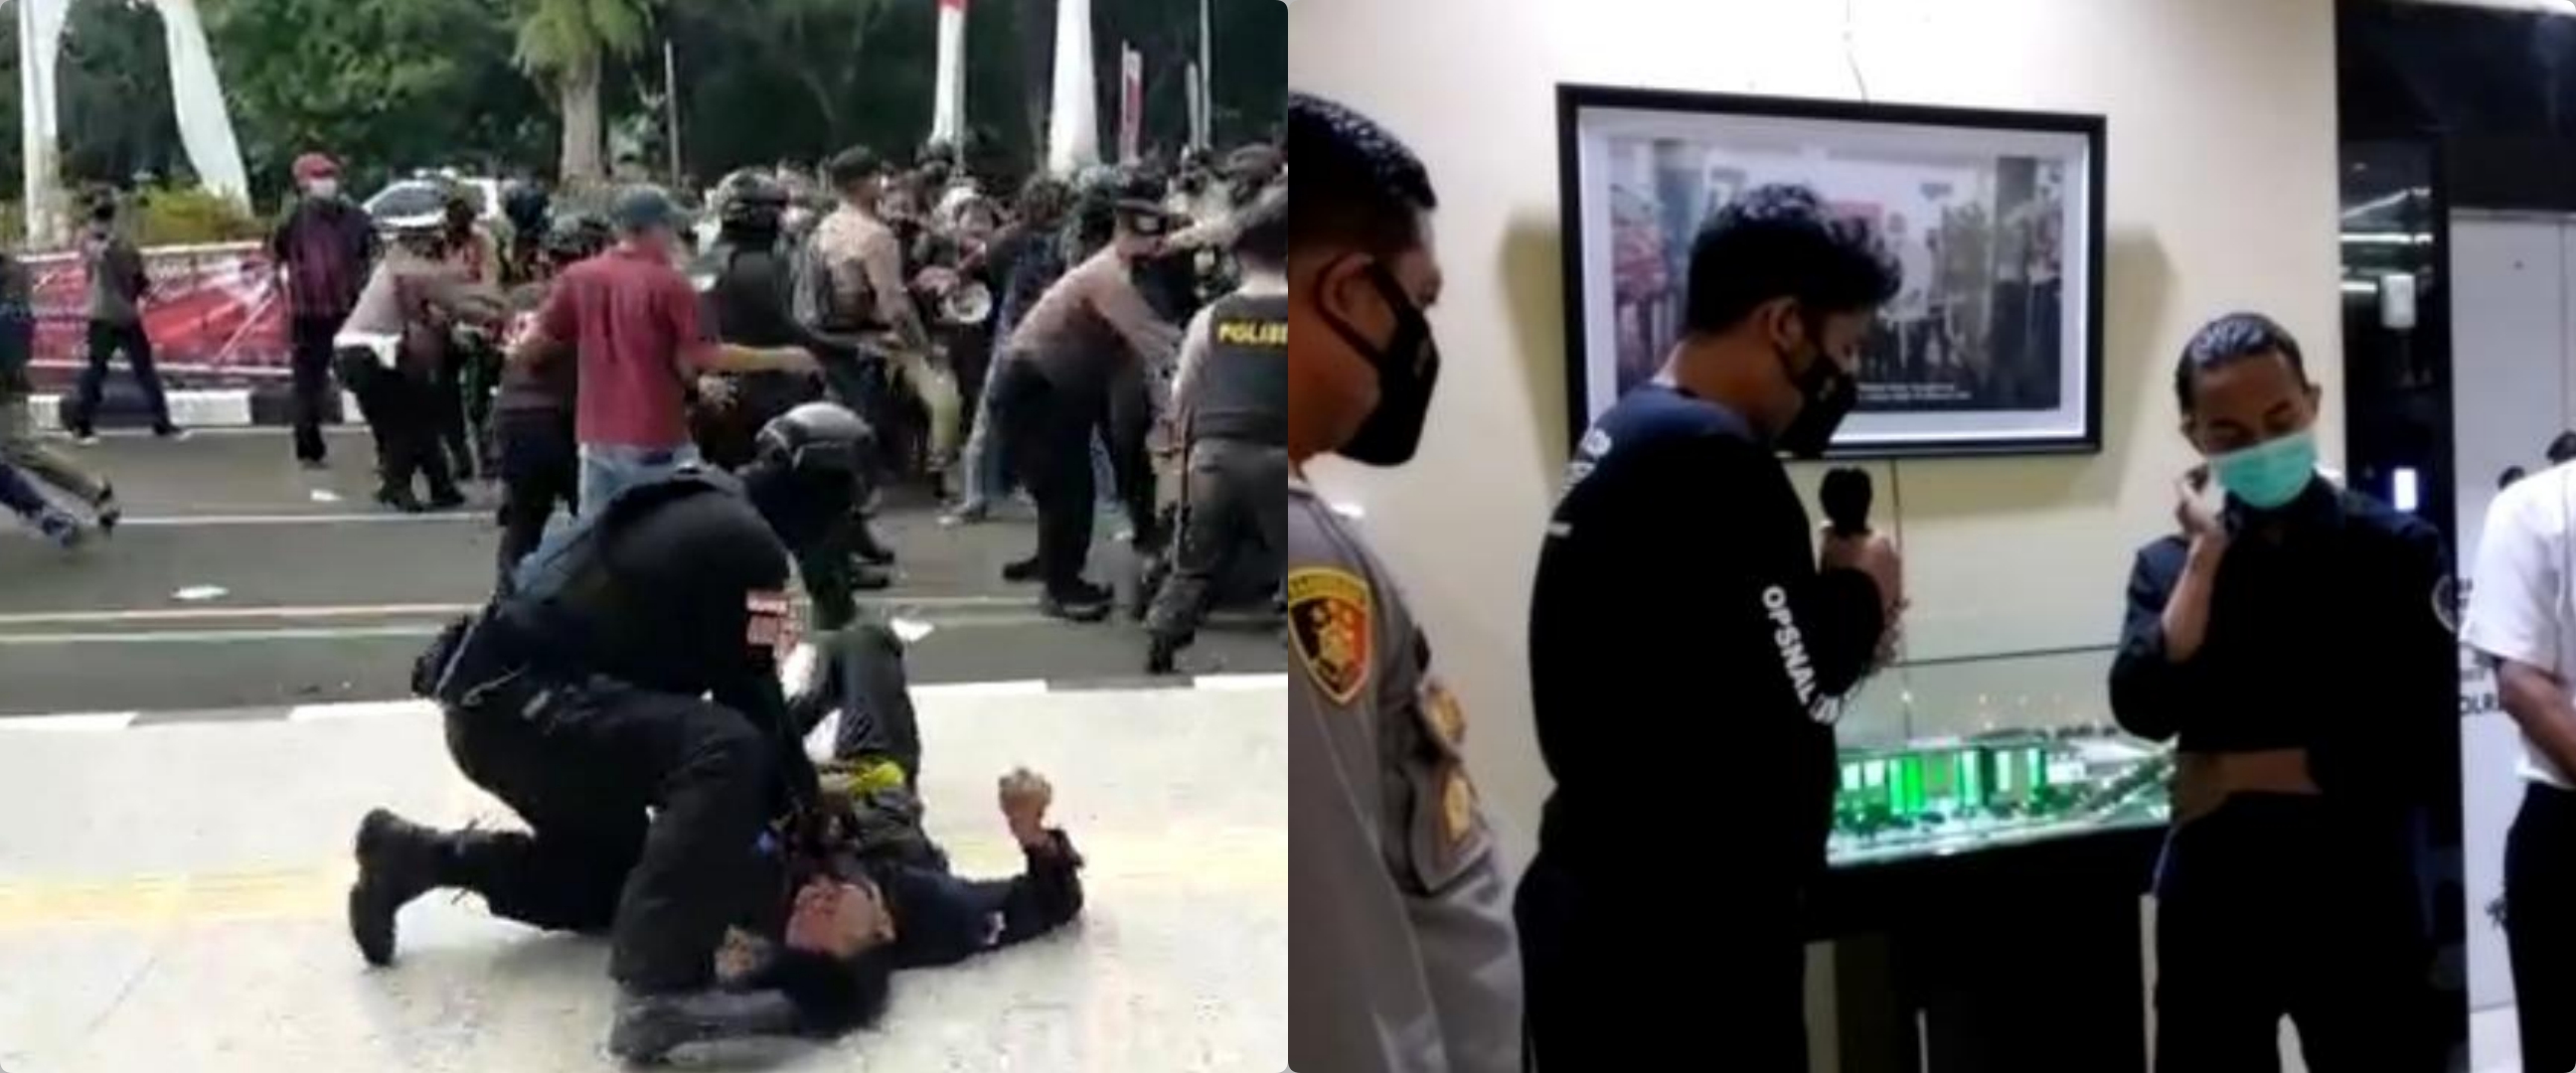 Viral polisi banting mahasiswa, pelaku peluk dan minta maaf ke korban